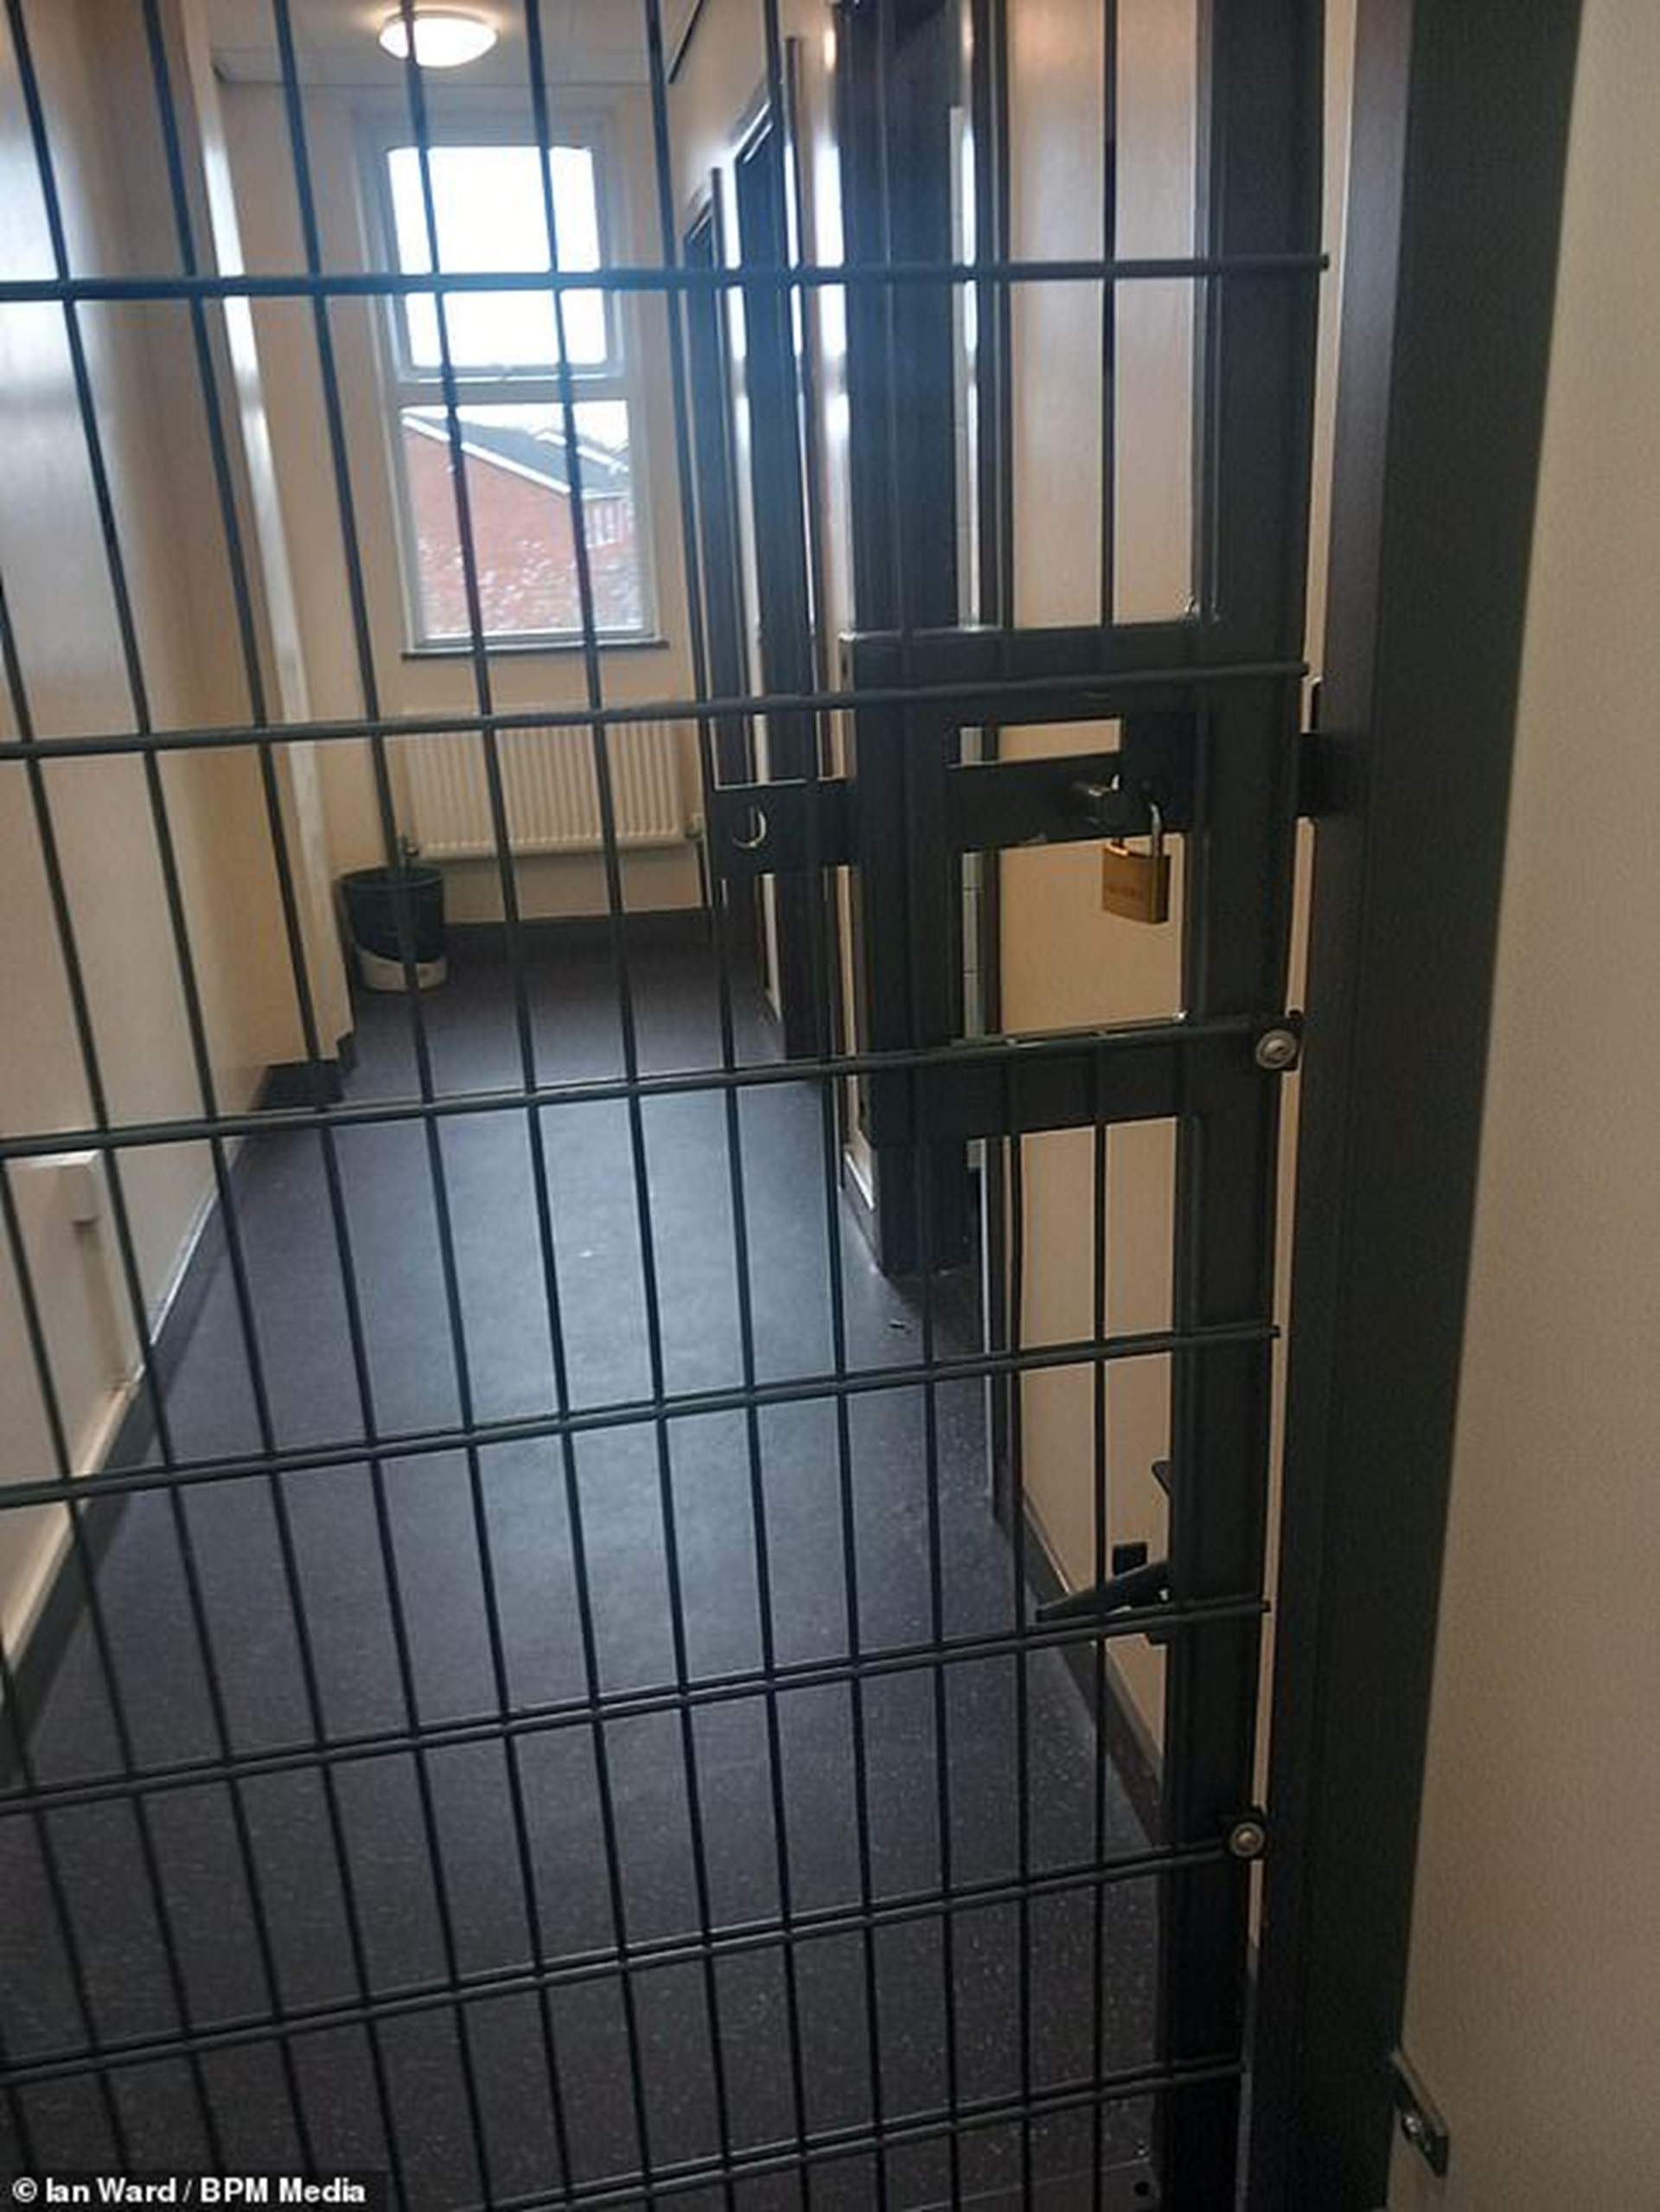 Polèmica a una escola del Regne Unit per instal·lar gàbies a les portes del lavabo